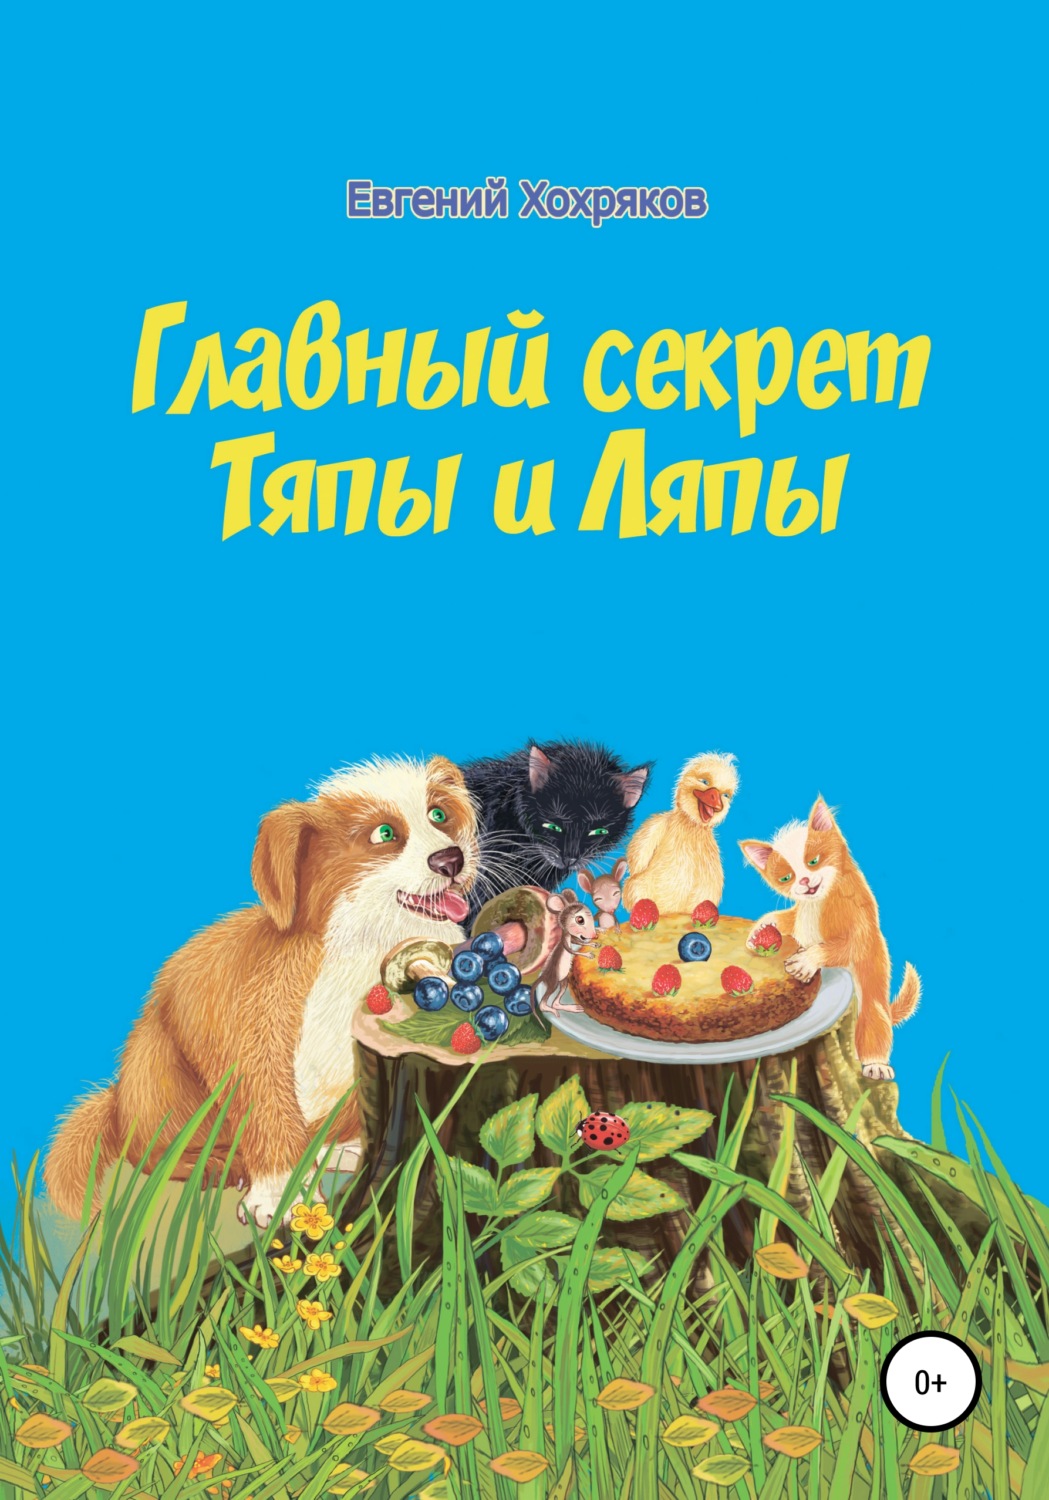 Хохряков Евгений Михайлович книги